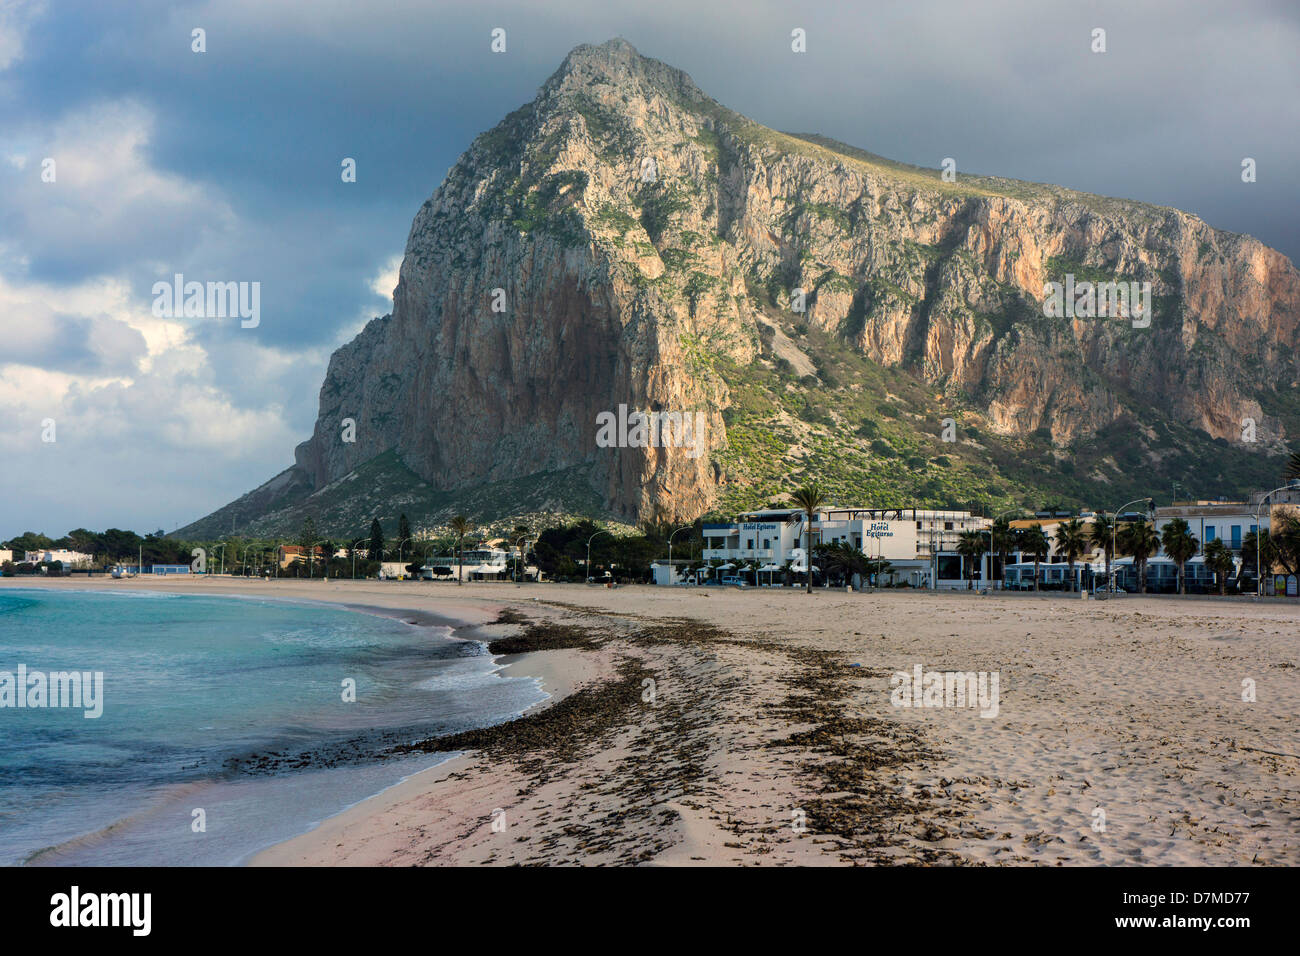 La spiaggia e il Monte Monaco, San Vito lo Capo, Sicilia, Italia Foto stock  - Alamy